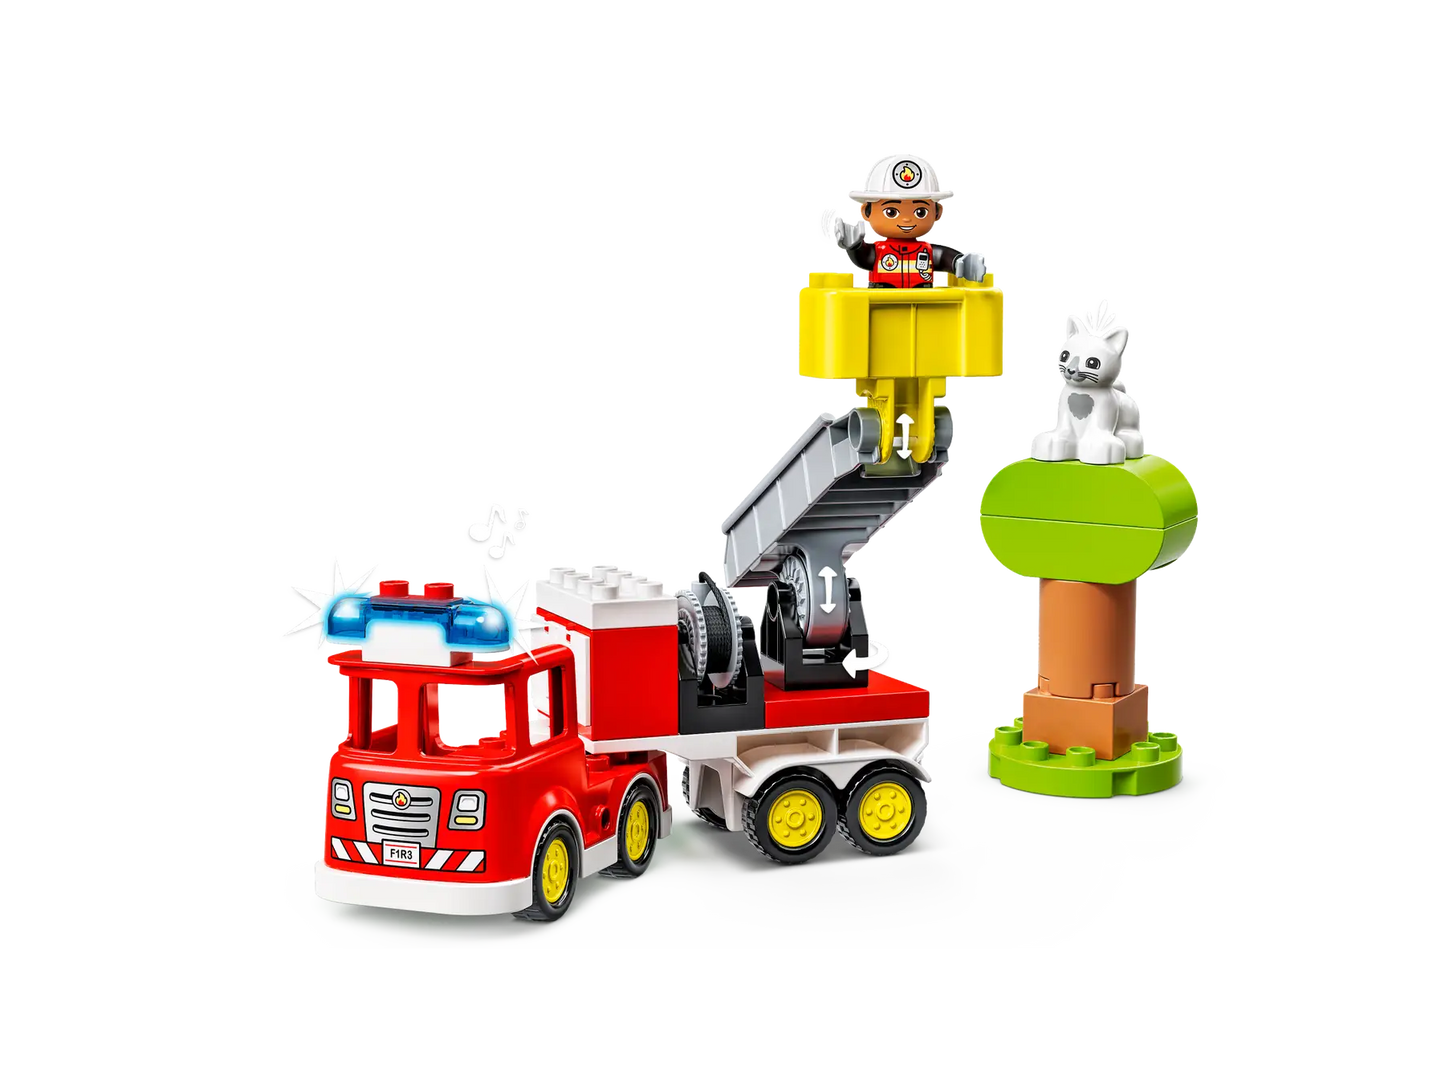 10969 LEGO® DUPLO® Fire Truck